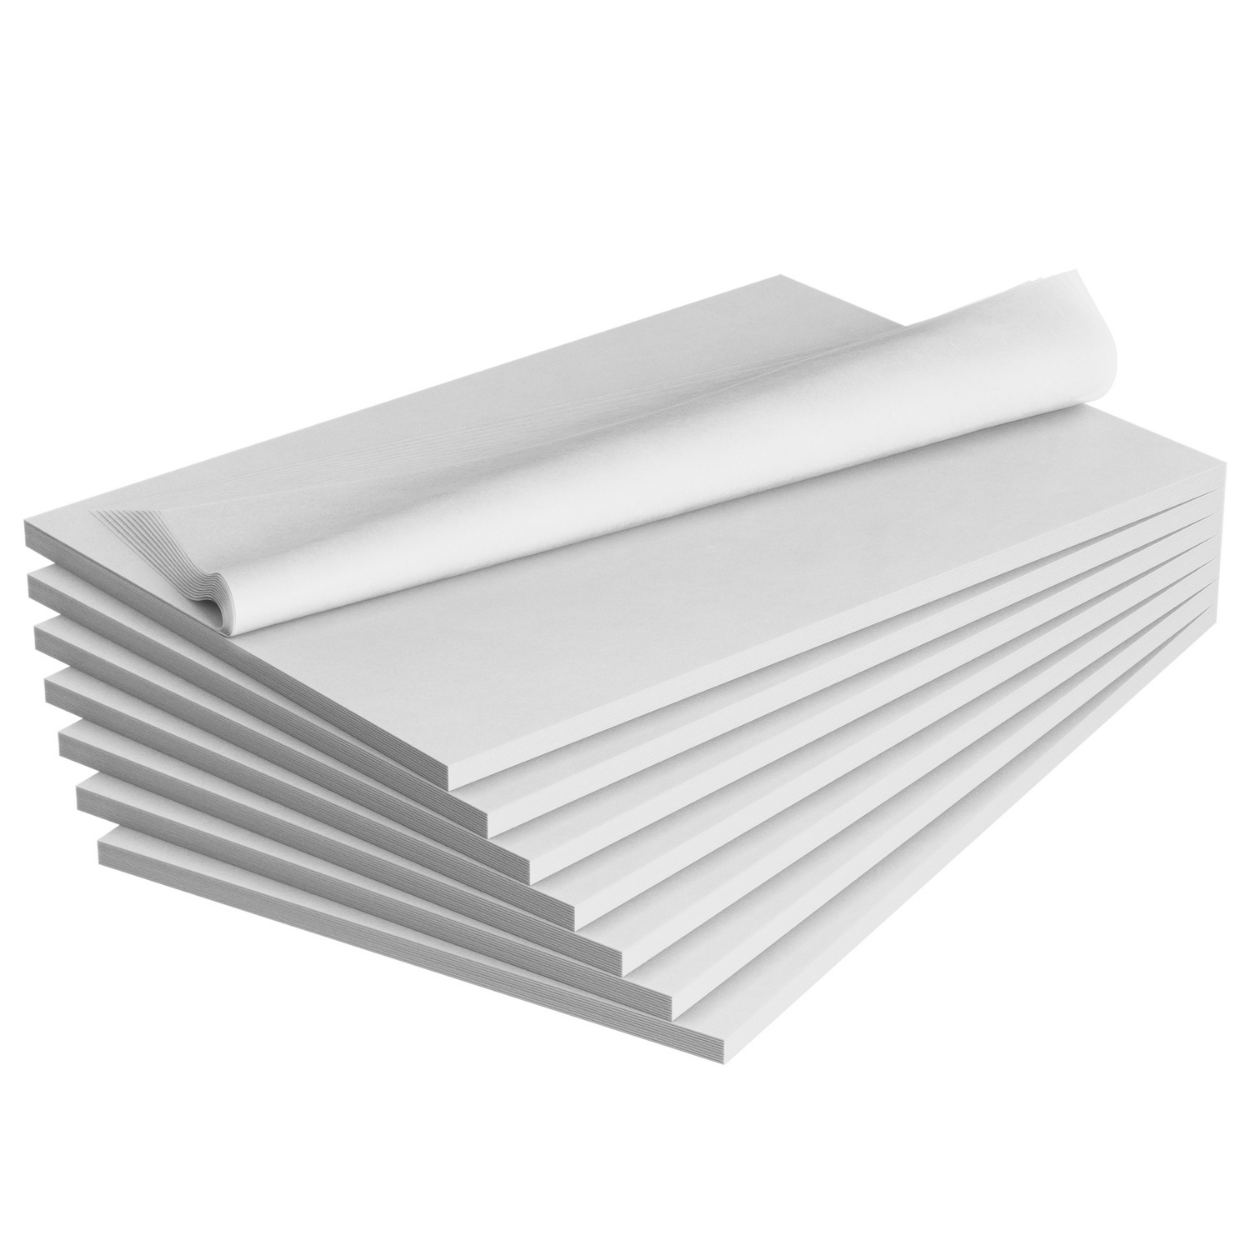 20 x 30 White Tissue Paper - Store Supply Warehouse